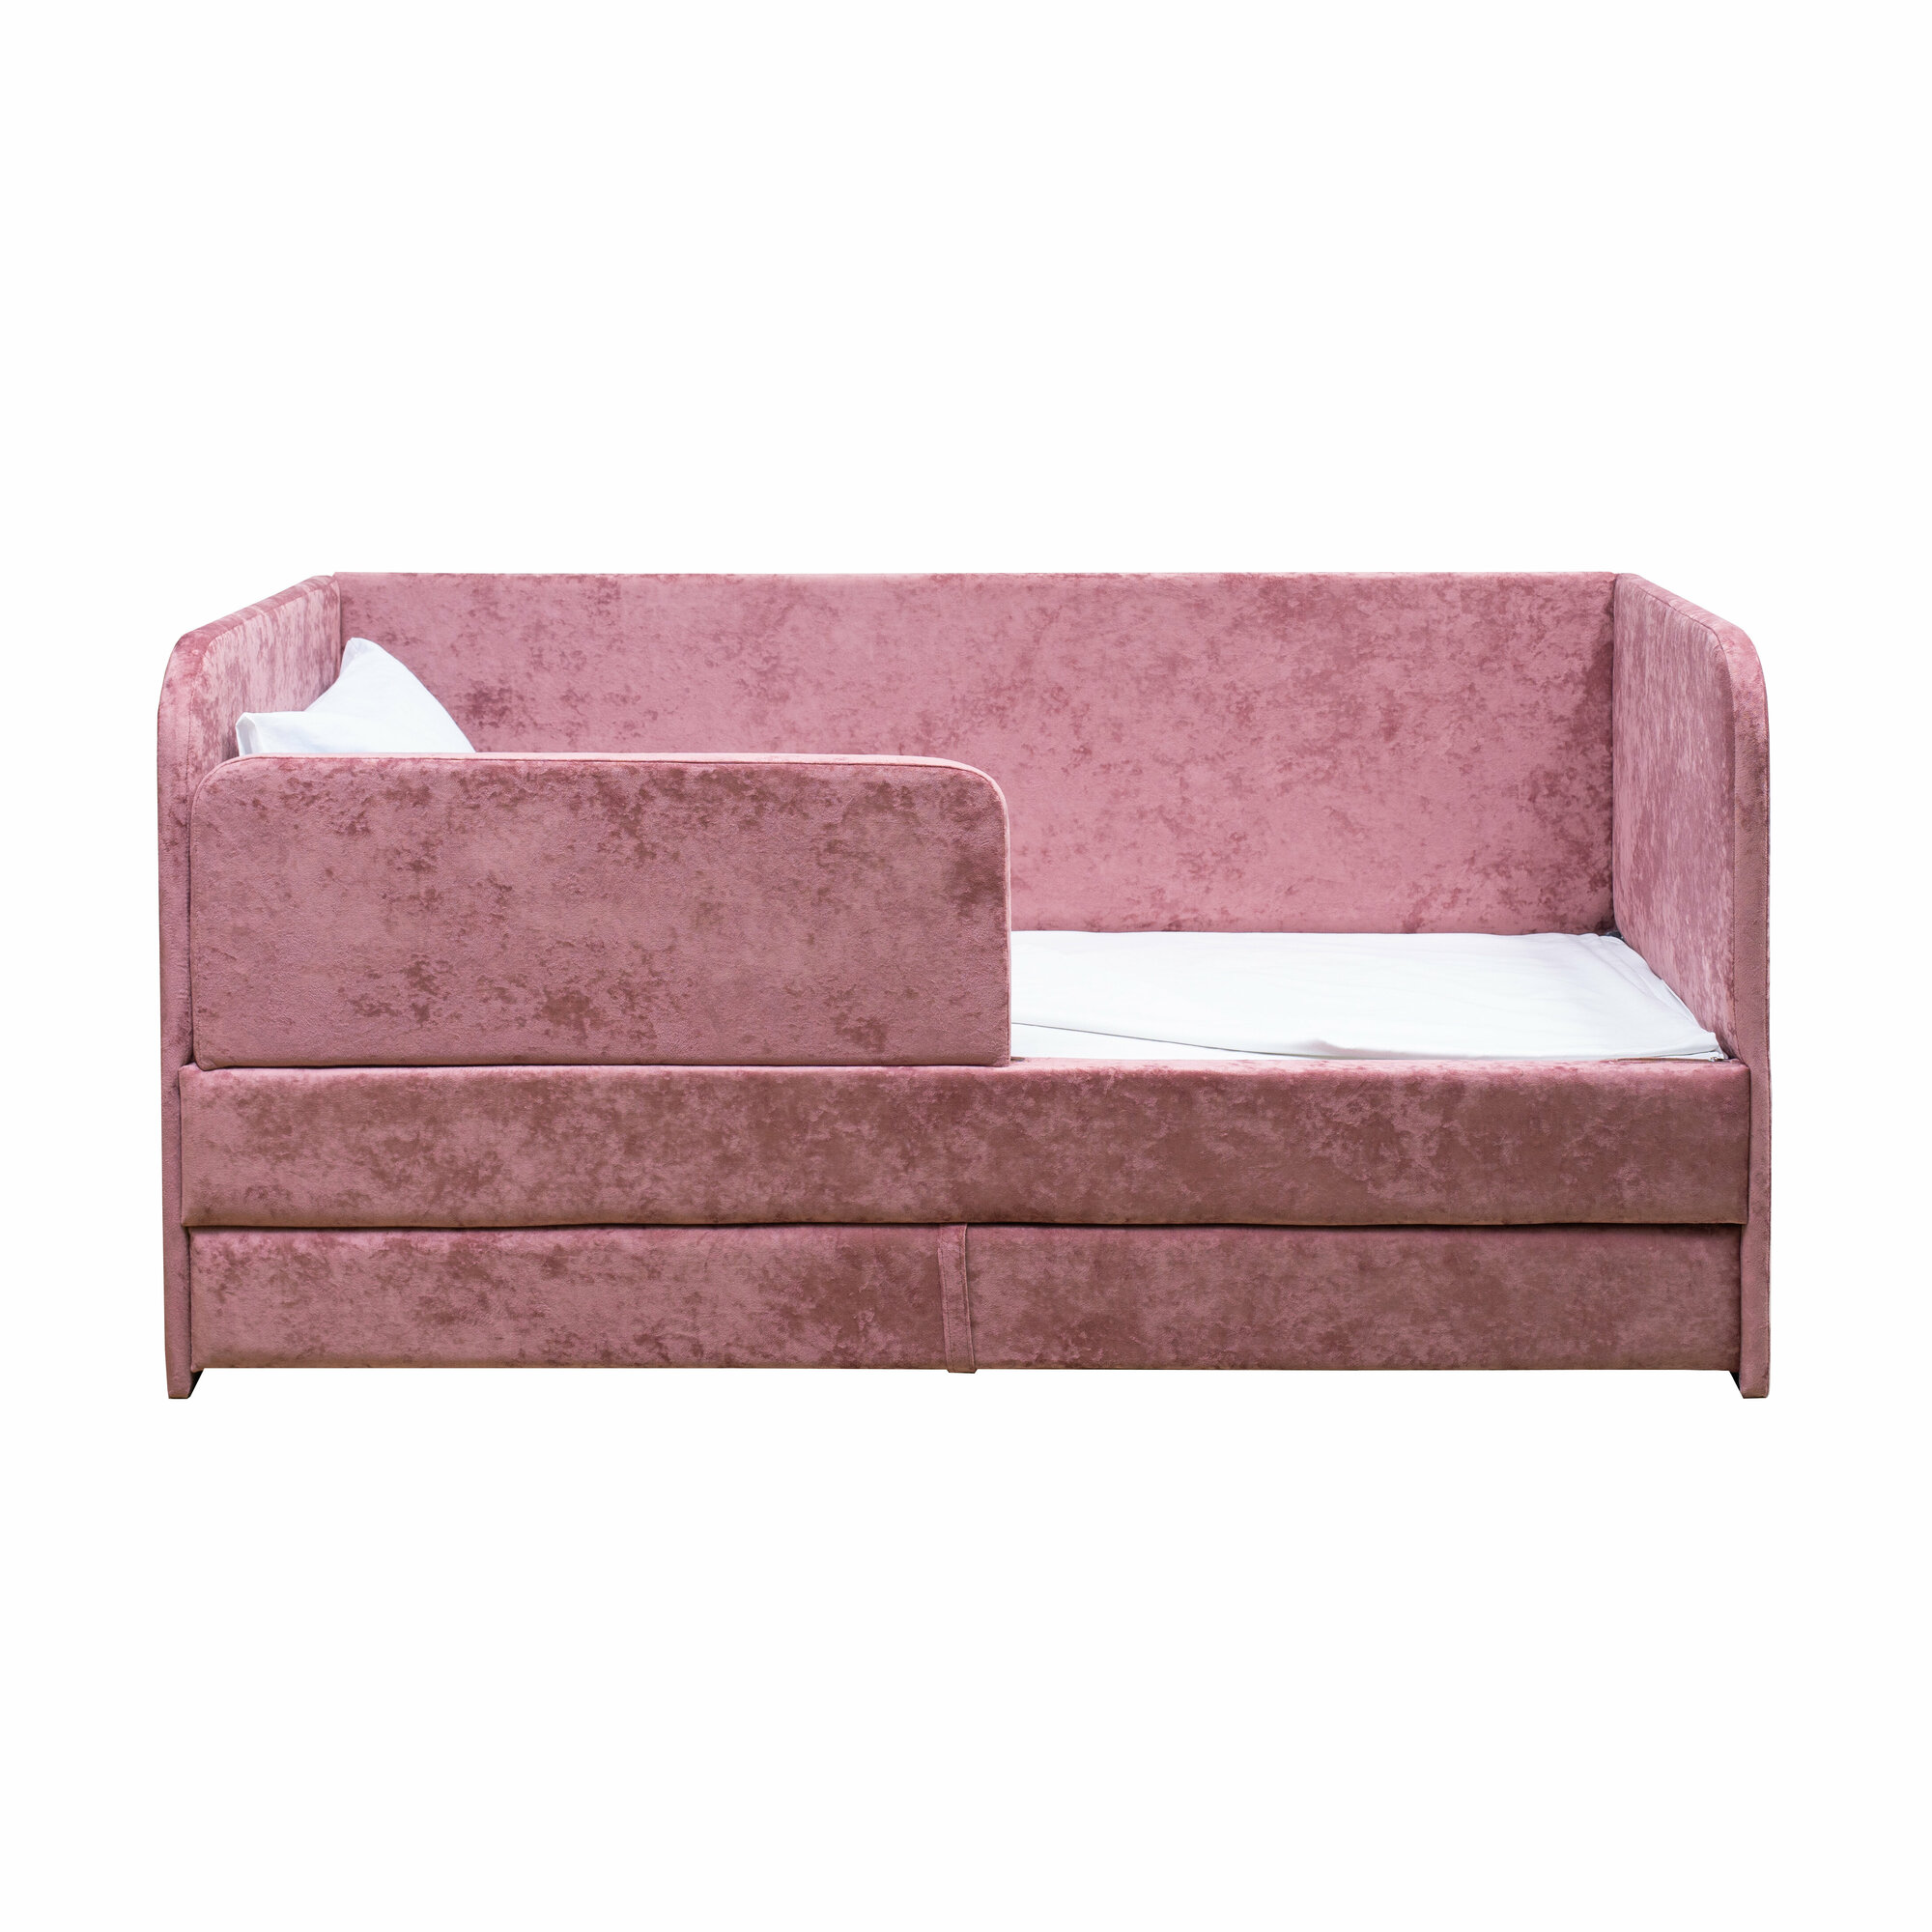 Кровать-диван "Непоседа" розовая 180х90 см, 2 спальных места, с ящиком, защитным бортиком